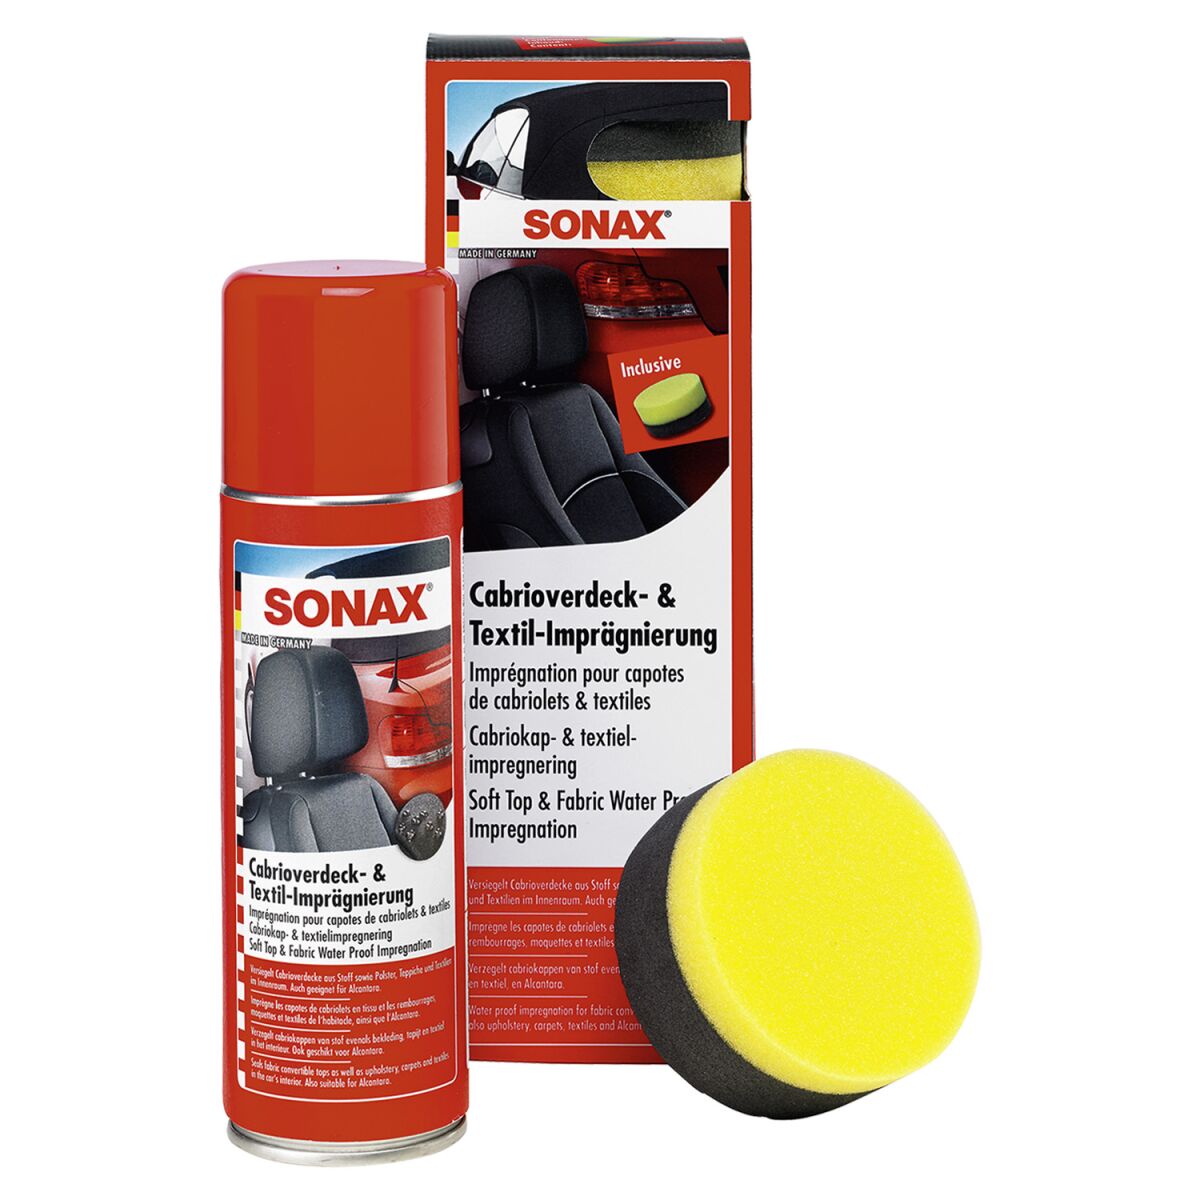 SONAX - Cabrioverdeck- & Textil-Imprägnierung 300ml, 18,99 €